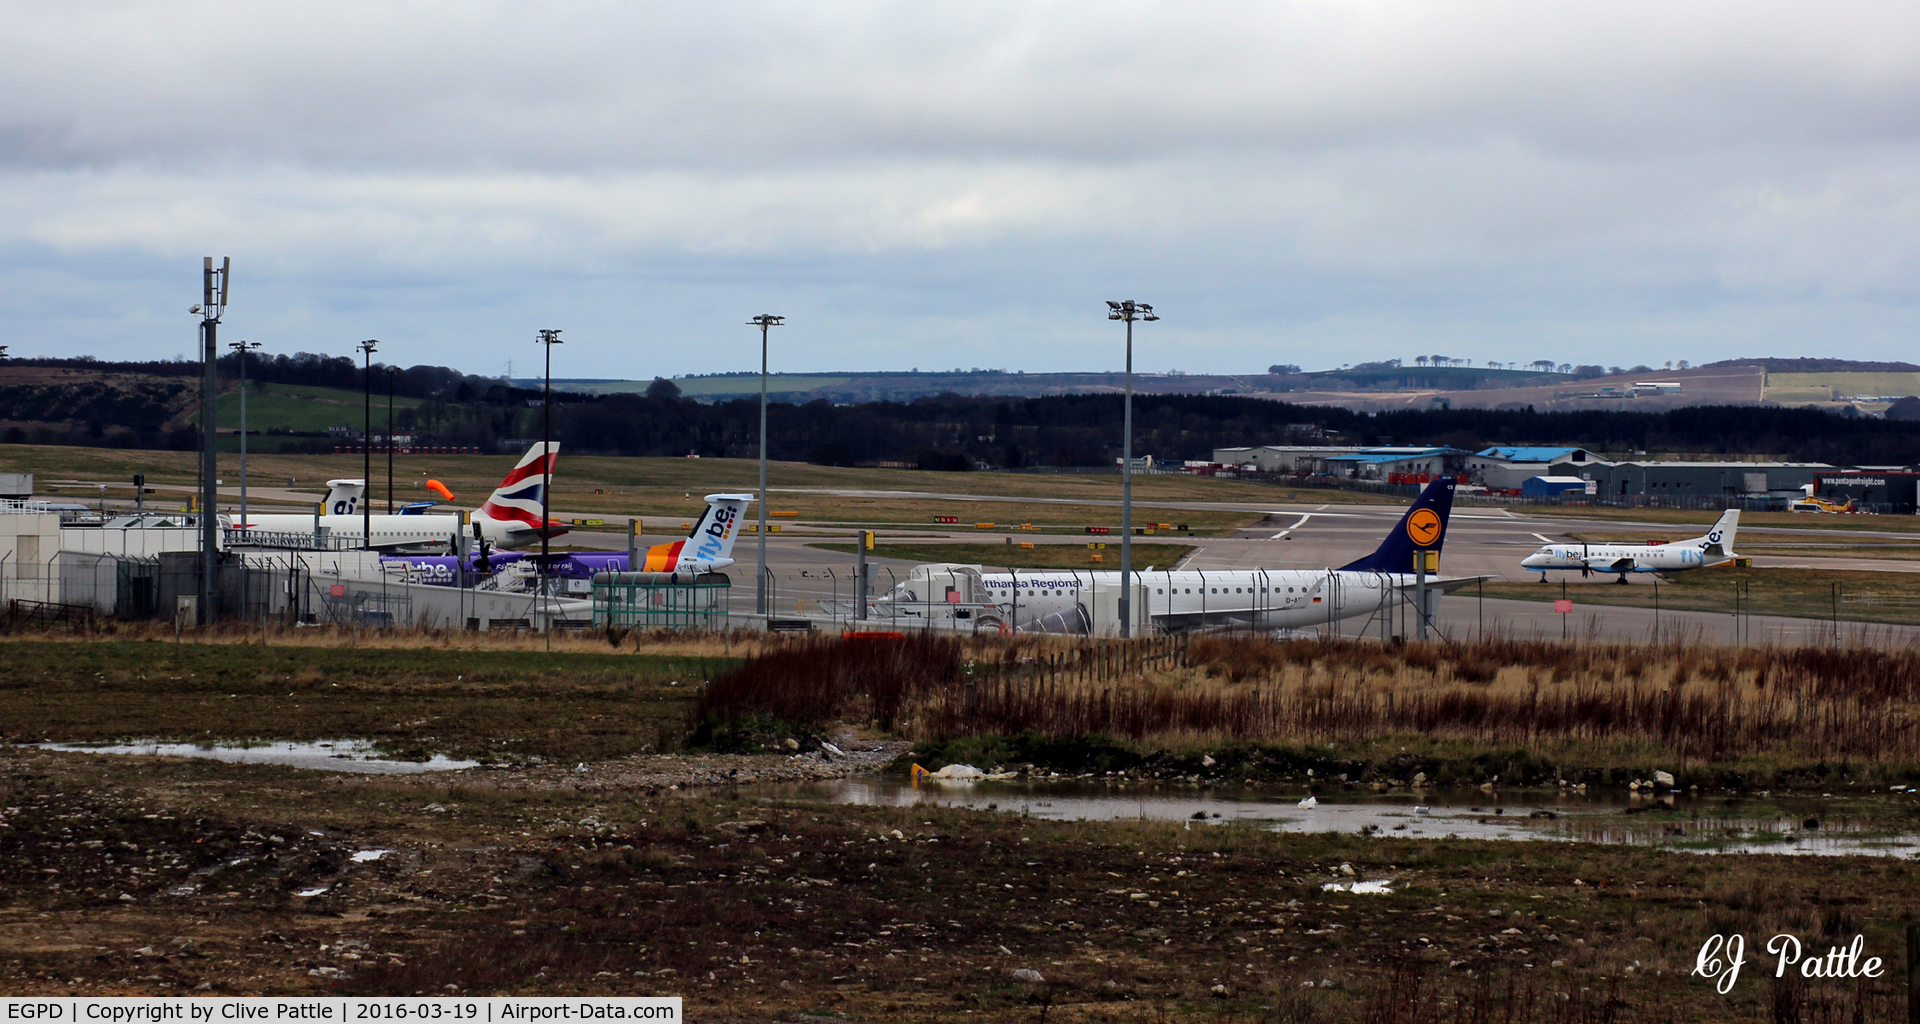 Aberdeen Airport, Aberdeen, Scotland United Kingdom (EGPD) - Terminal view facing north at Aberdeen EGPD. Viewed from a litter strewn area under development.